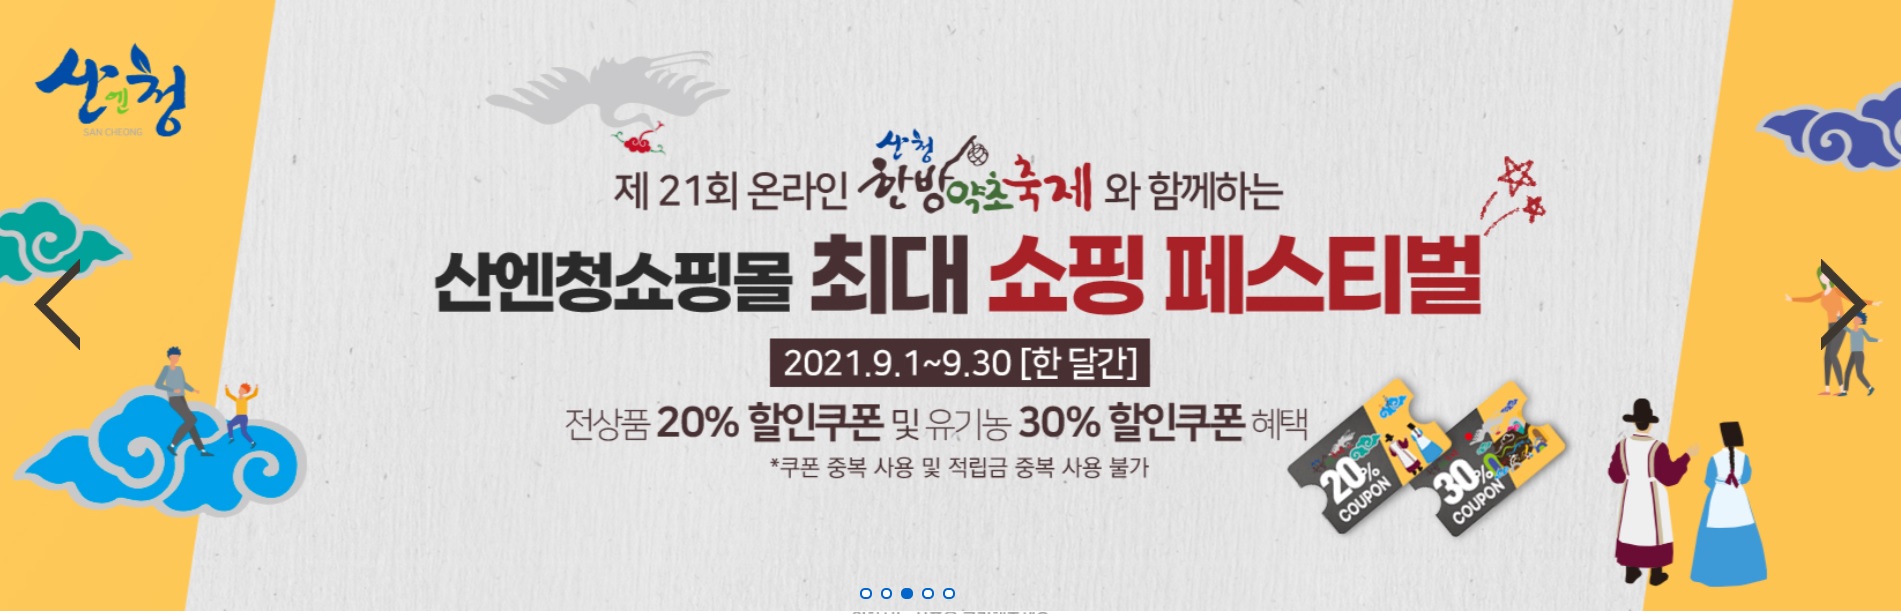 항노화 웰니스 메카…제21회 온라인 산청한방약초축제 개최 2